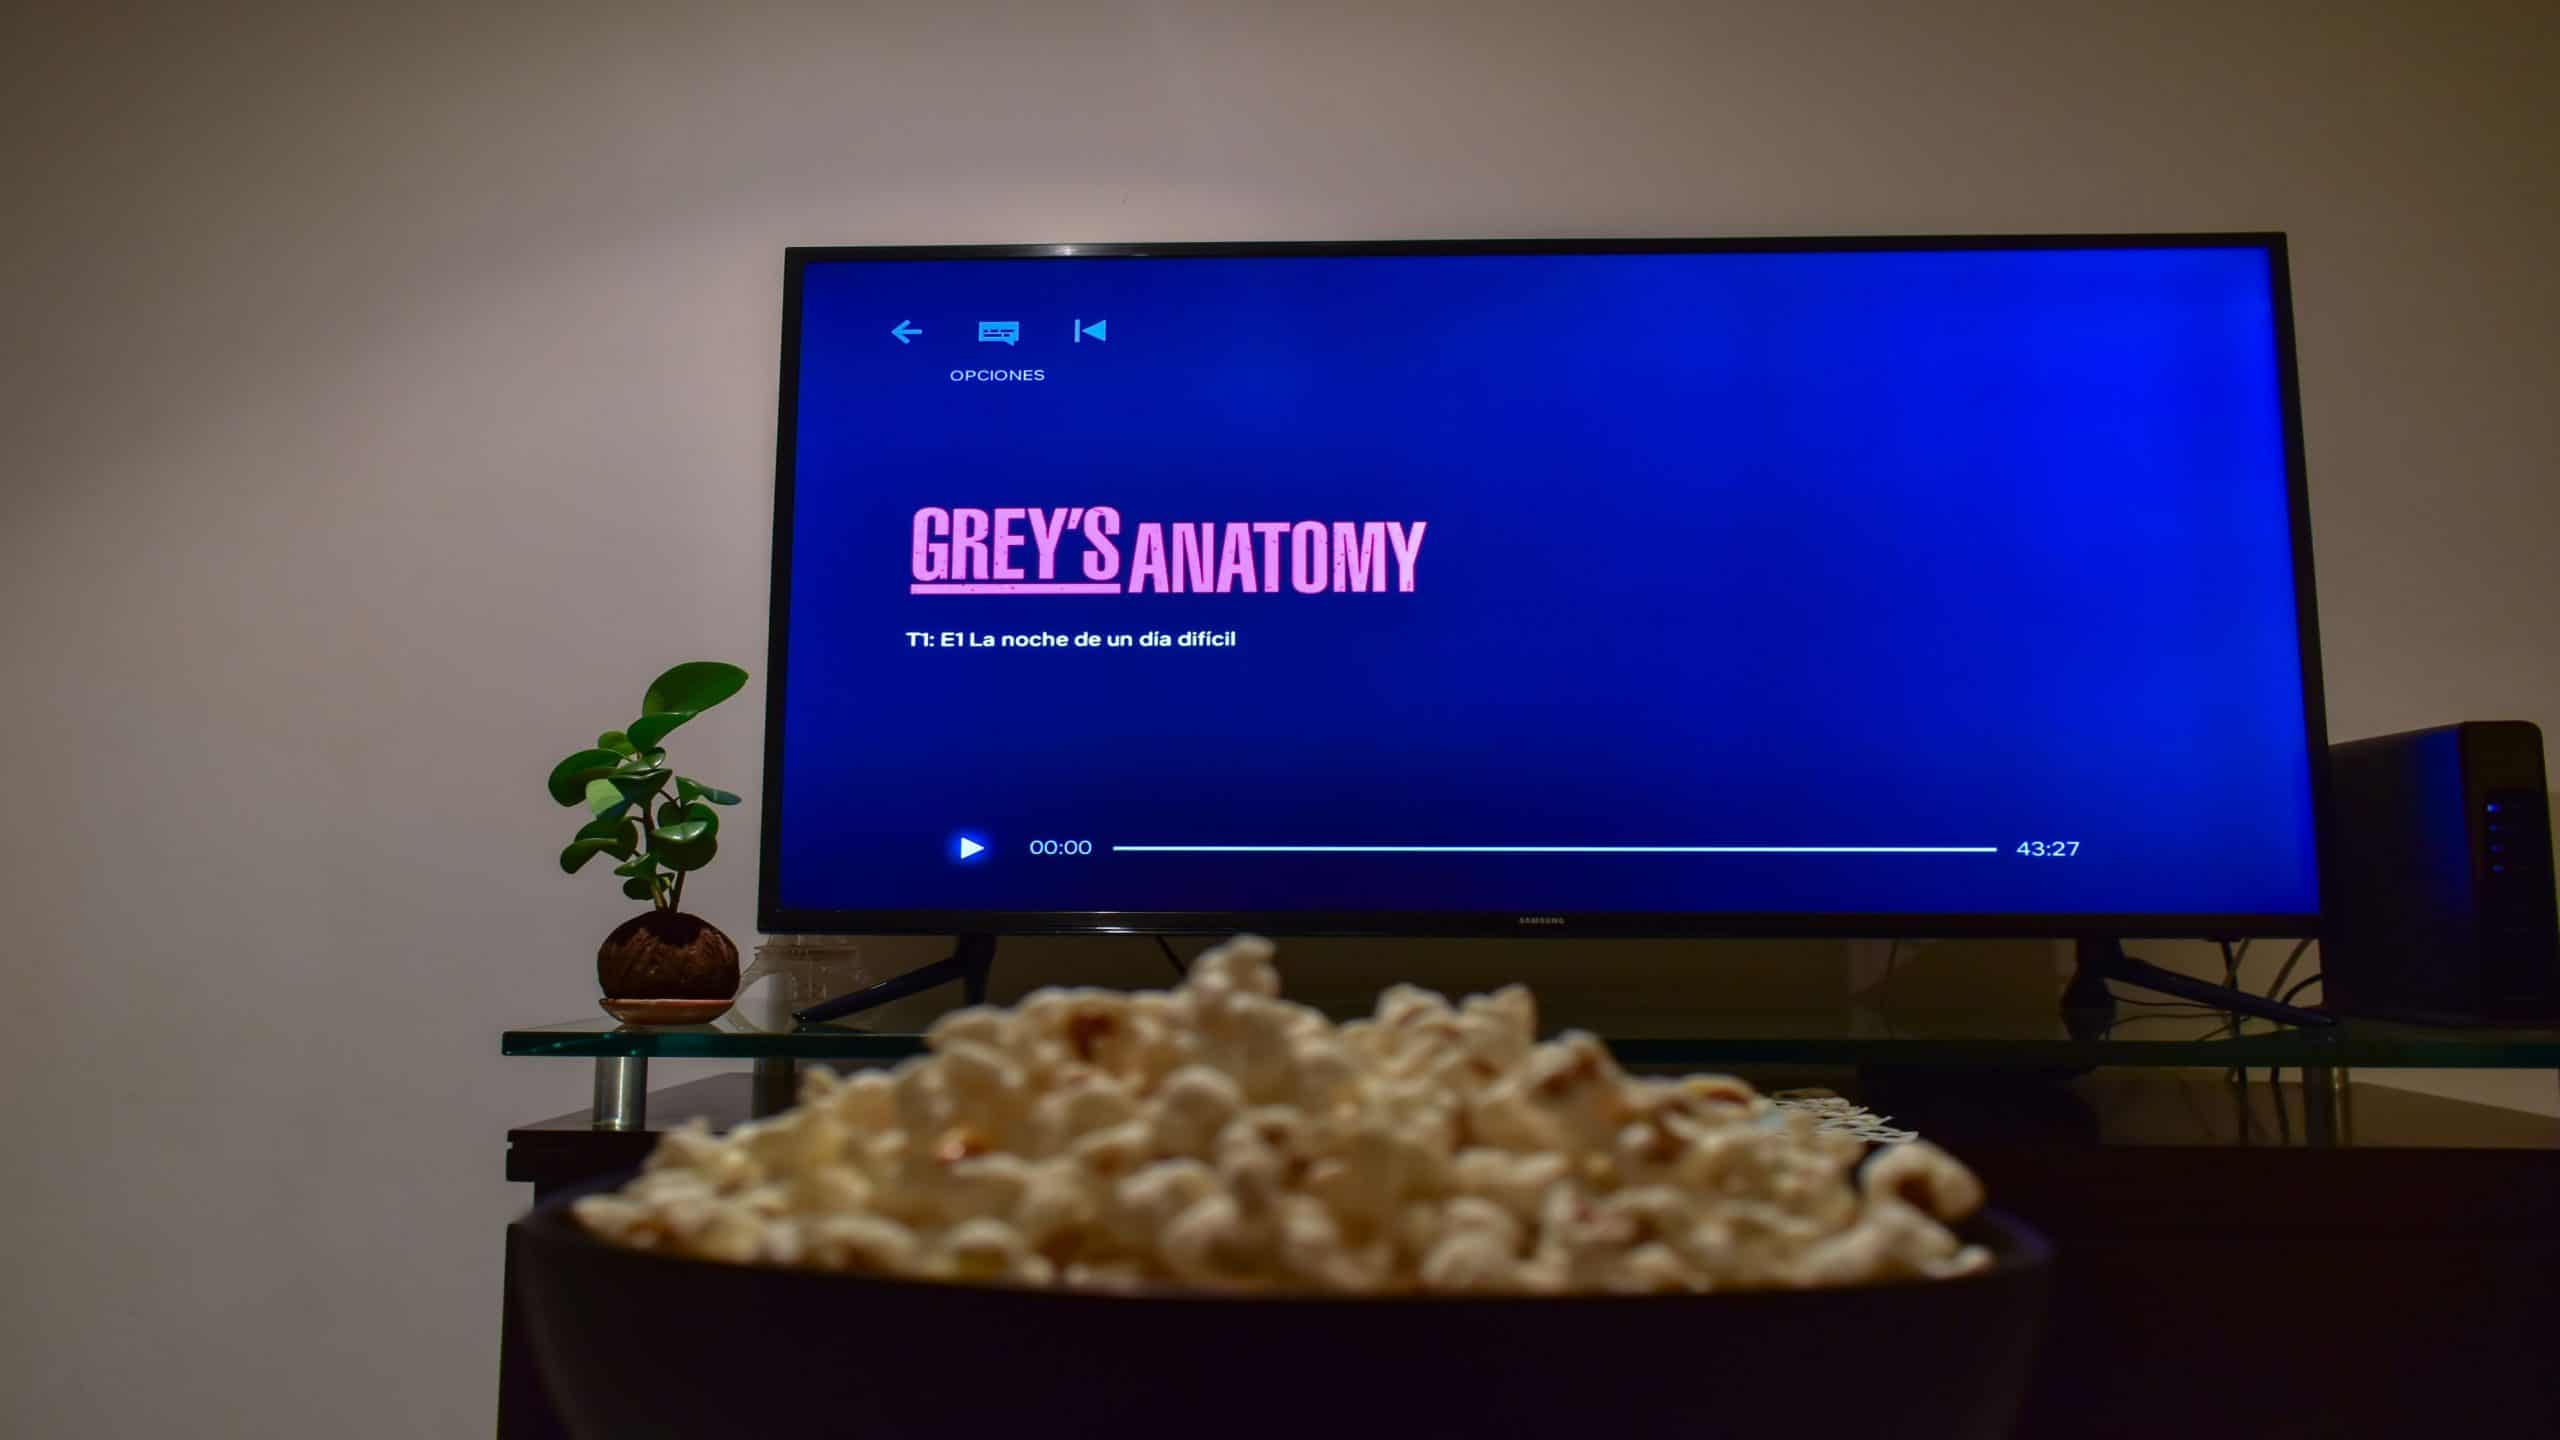 Cali, Colômbia - 26 de agosto de 2019: Aplicativo Netflix na tela da TV reproduzindo a série Grey's Anatomy atrás de uma tigela de pipocas.